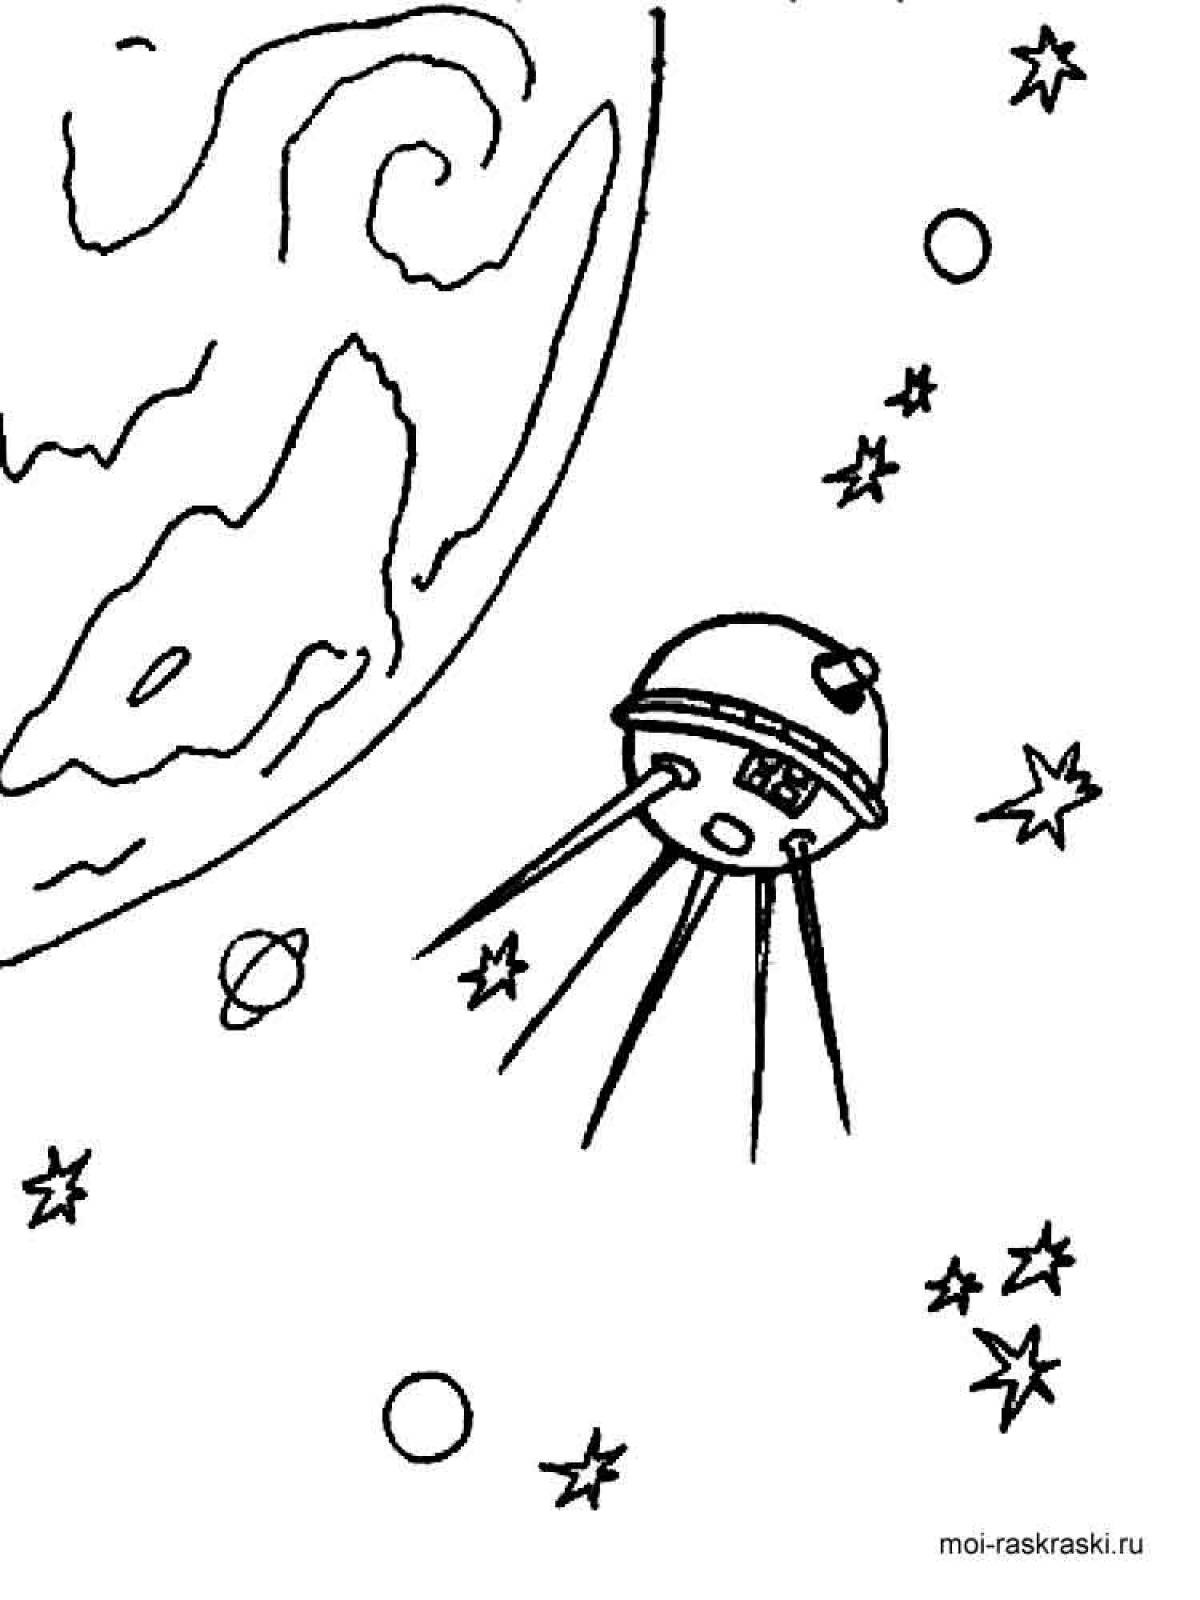 Раскраски к дню космонавтики для детей распечатать. Рисунок на тему космос. Раскраска. В космосе. Космос раскраска для детей. Рисунок на тему космос карандашом.